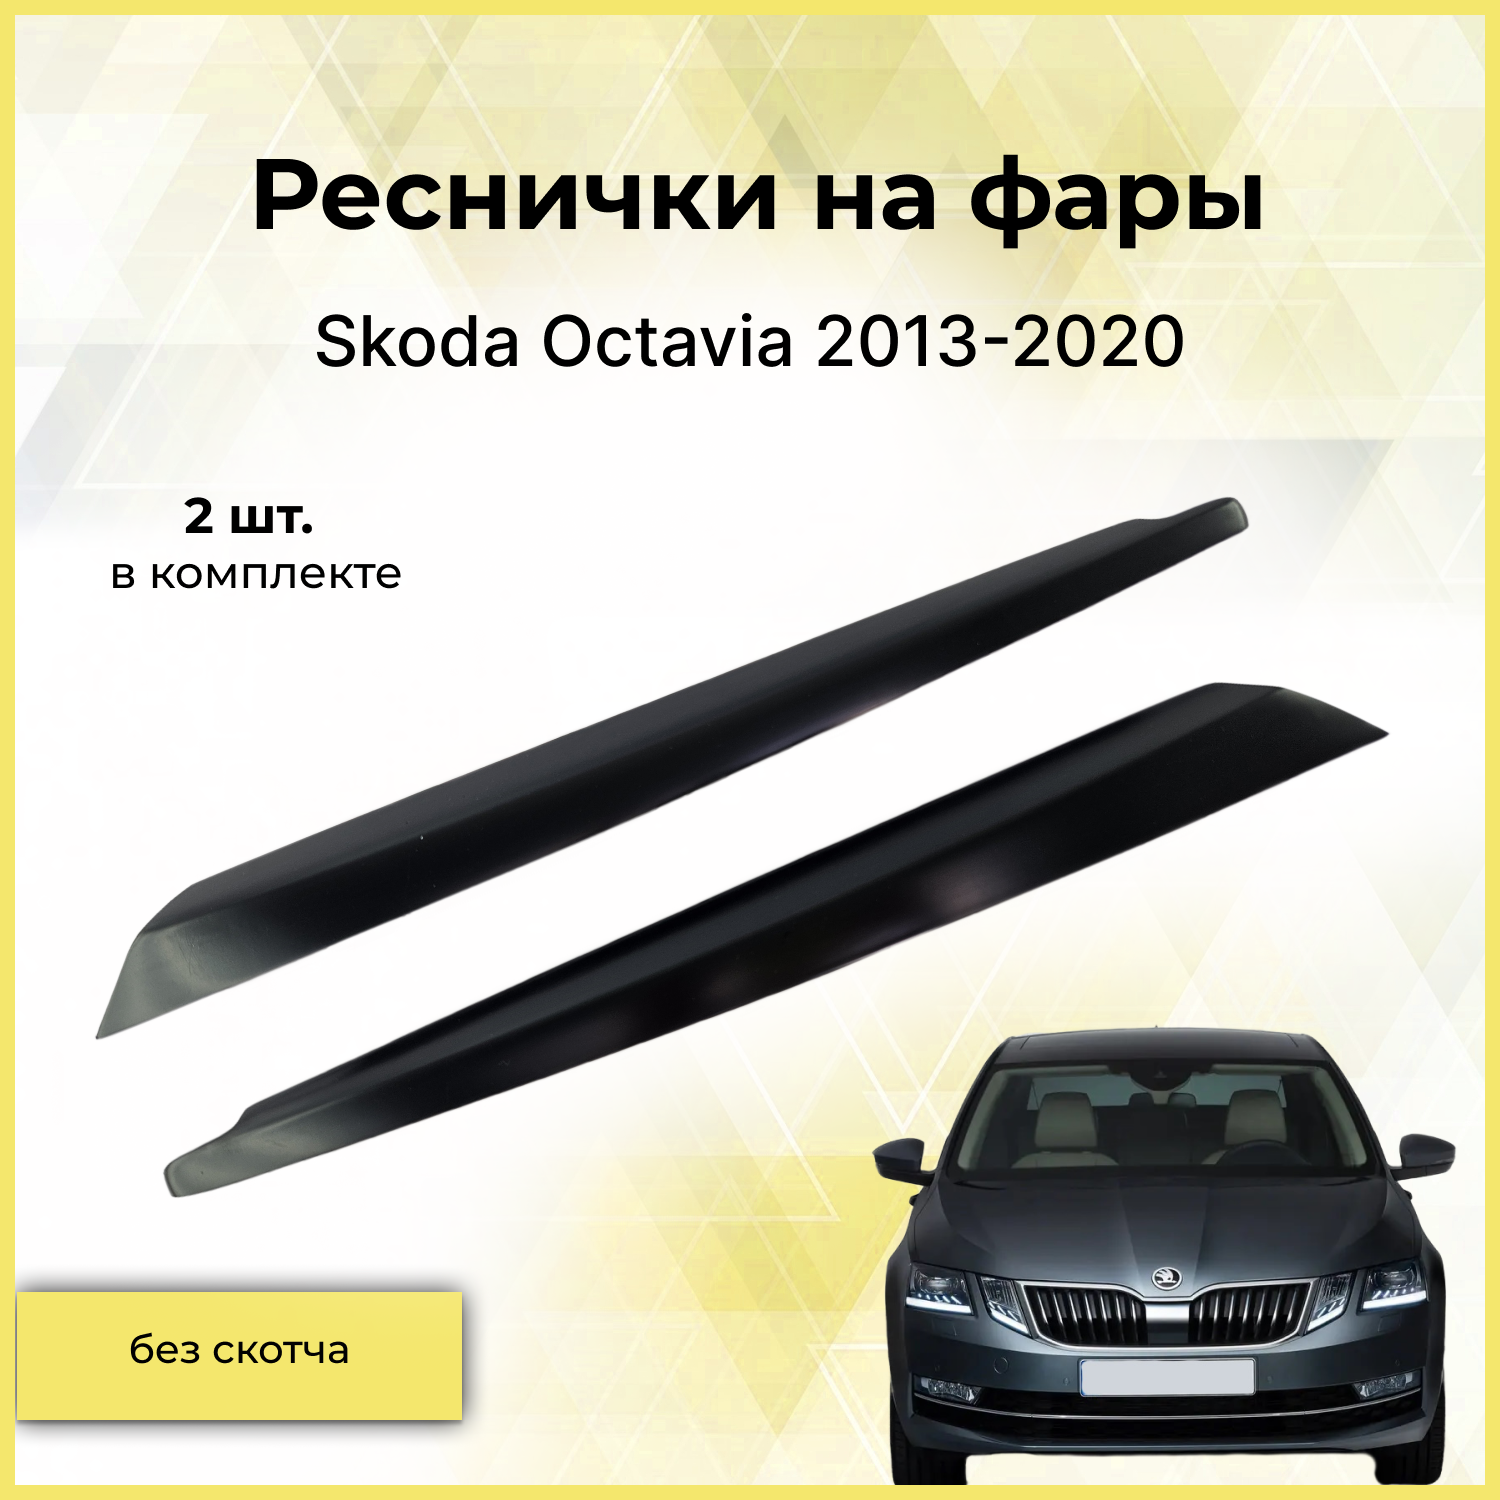 Накладки на передние фары / Реснички для Skoda Octavia (Шкода Октавия) 2013-2020